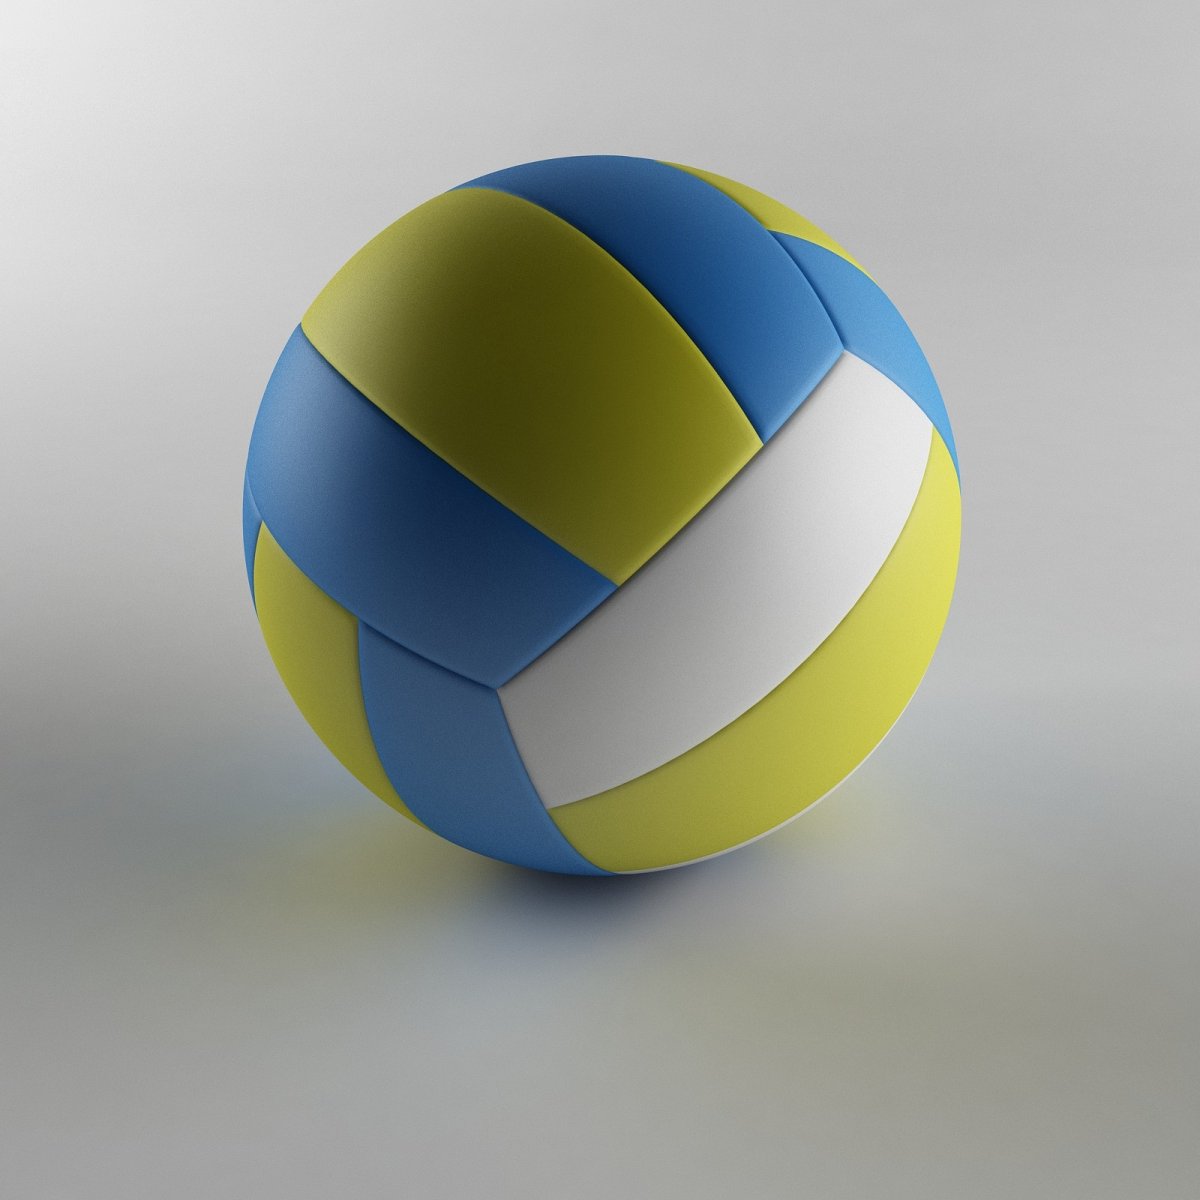 Baisidiwei волейбольный мяч